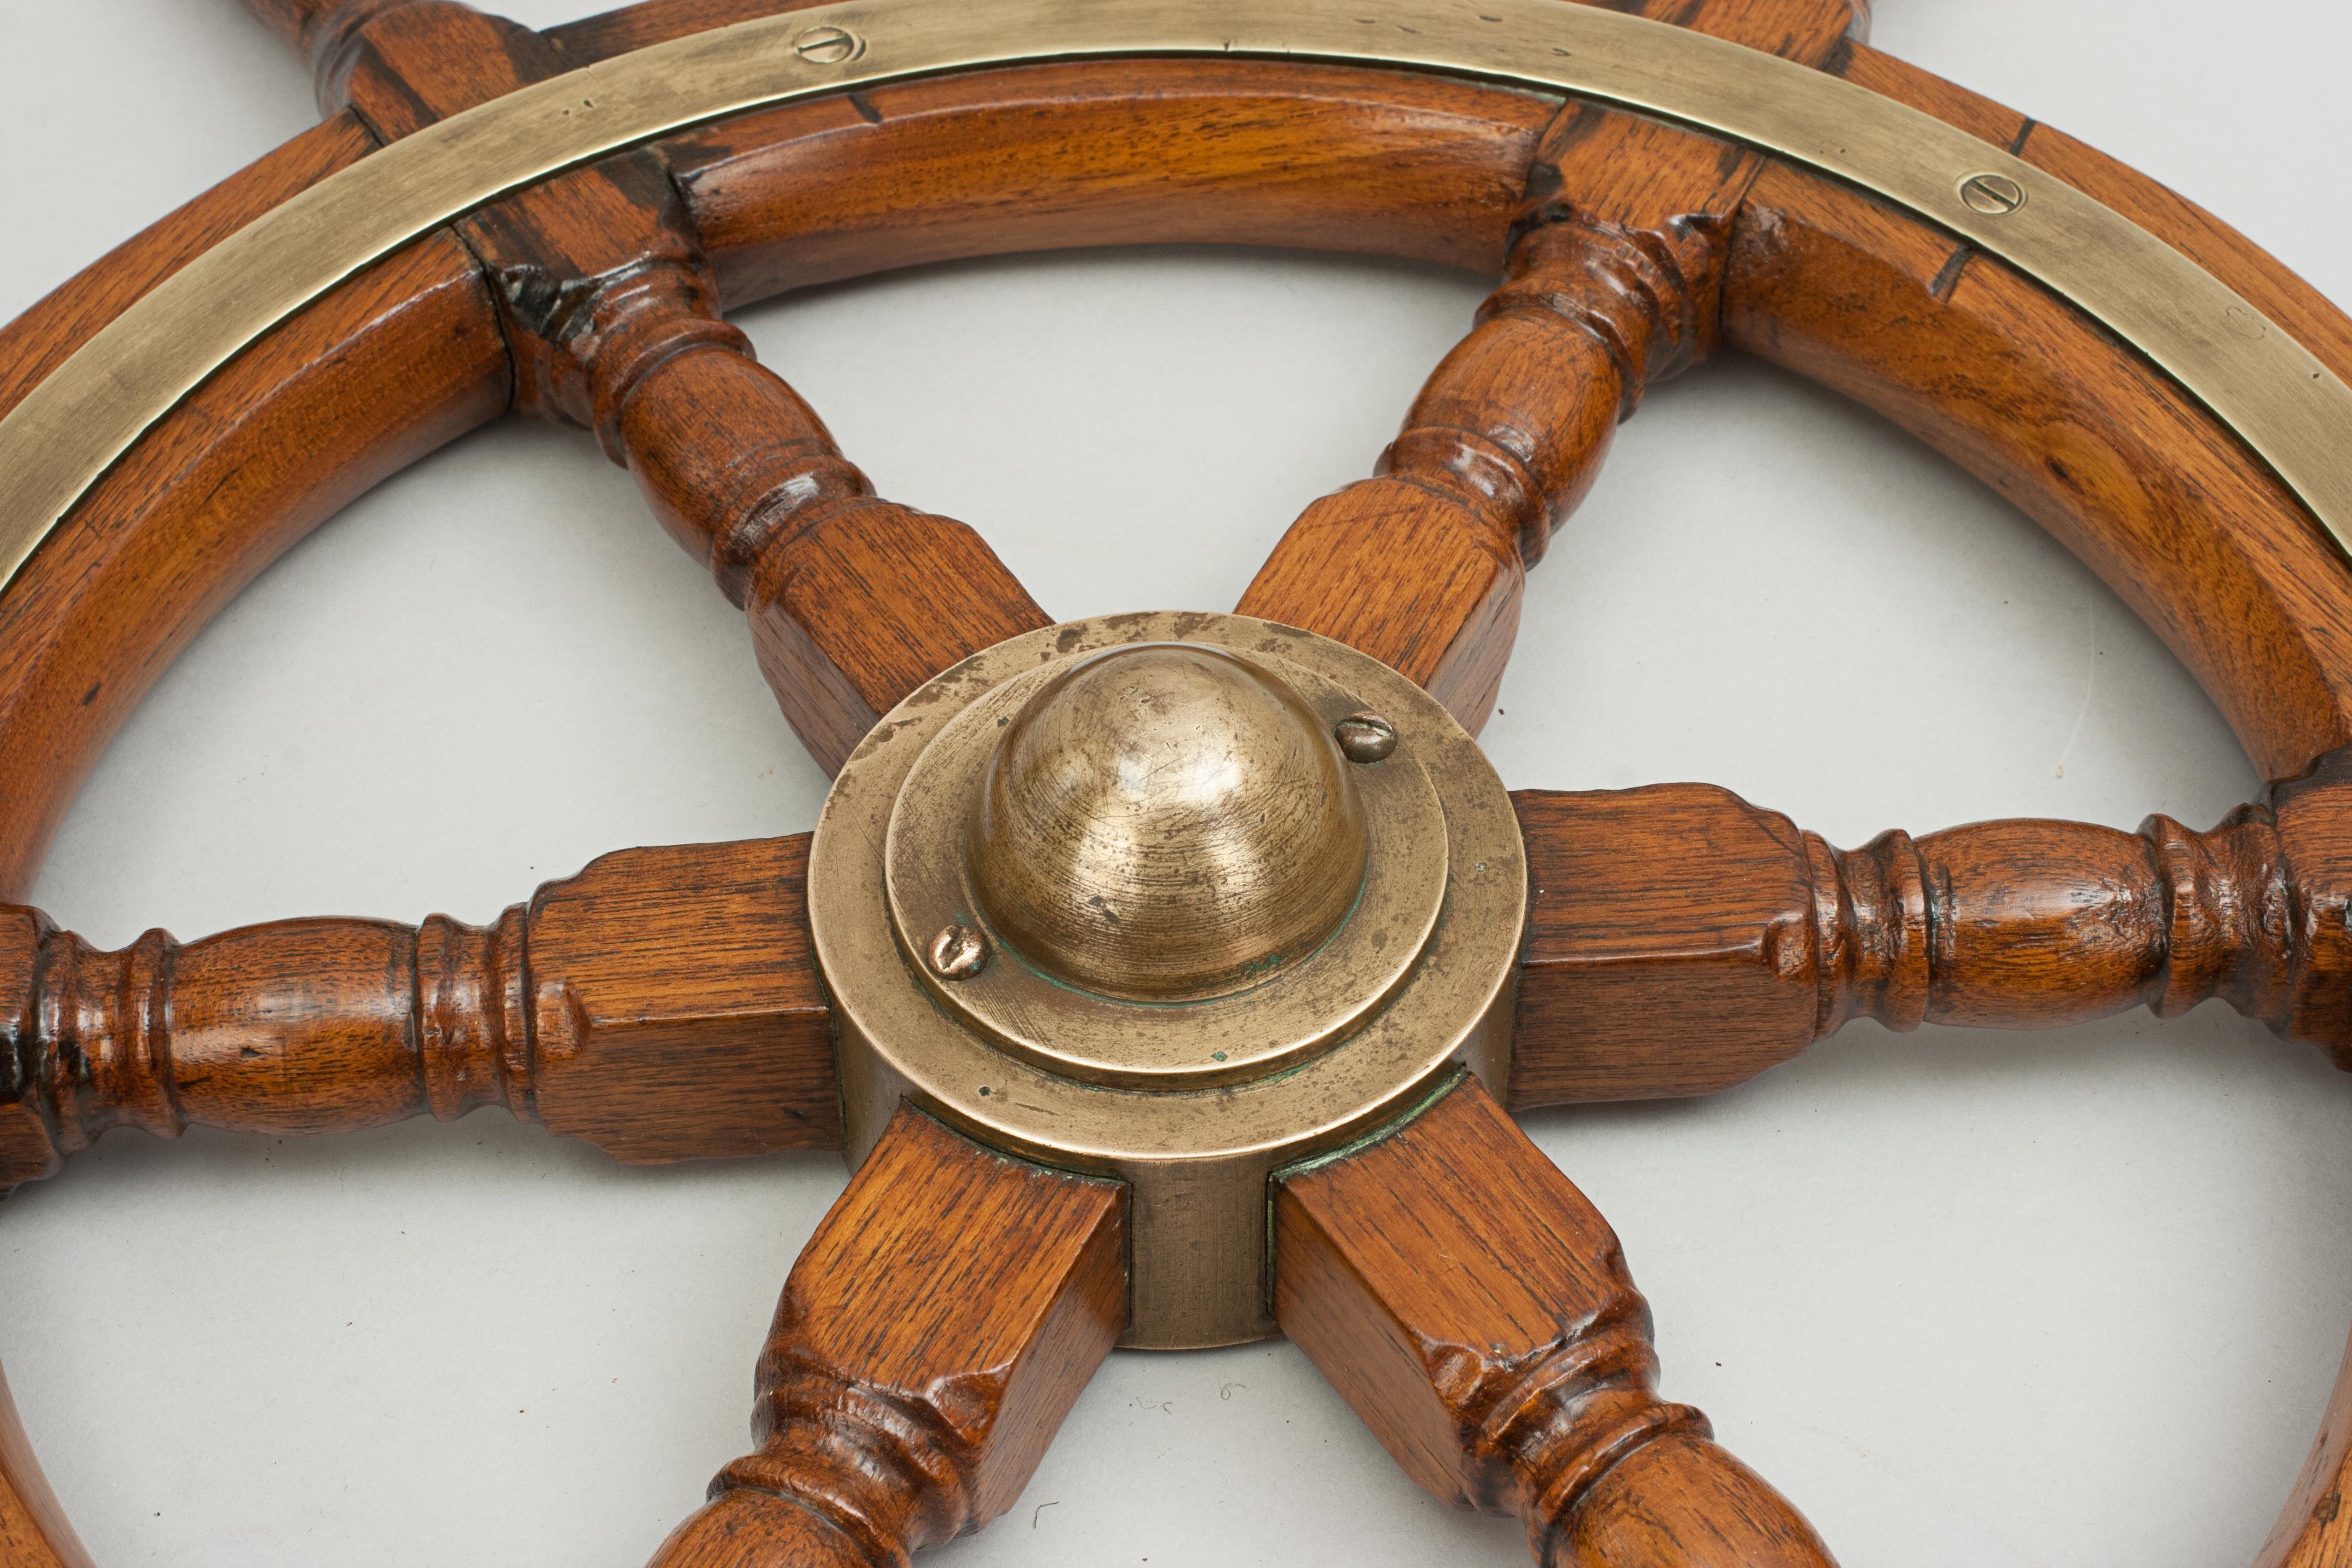 Vintage Teak Ships Wheel, 6 Spoke Helm Wheel, Teak and Brass 1